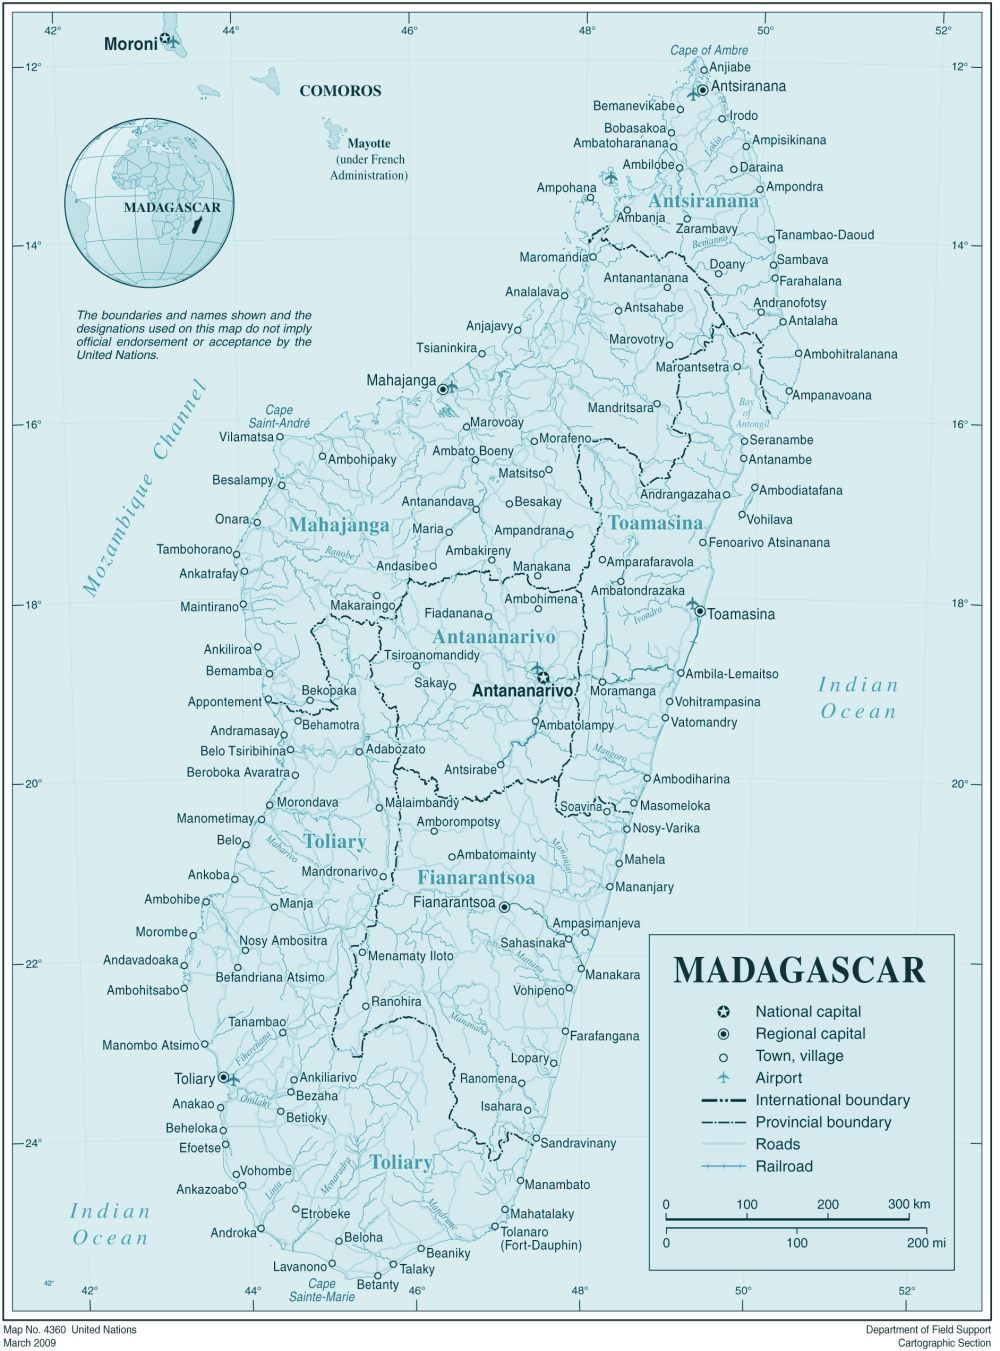 [Update] Bản đồ hành chính đất nước Madagascar (Madagascar Map) phóng to năm 2022 23